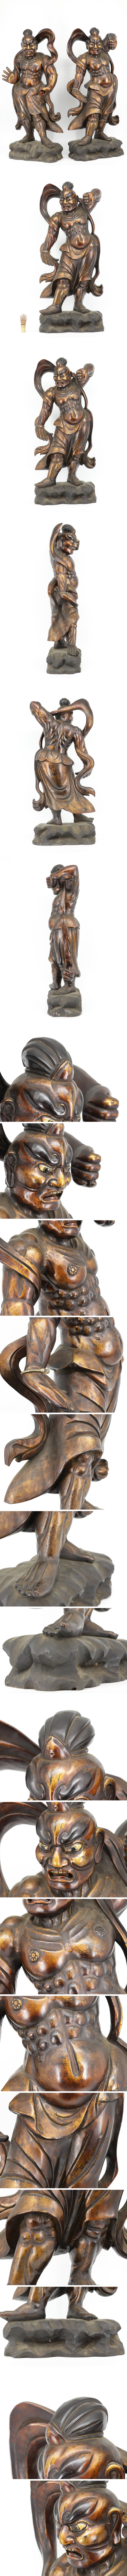 【日本買付】仏教美術 特大約90㌢ 木造 仁王像 金剛力士像 阿形吽形 一対 木彫 阿吽像 仏像 佛像 A164 仏像